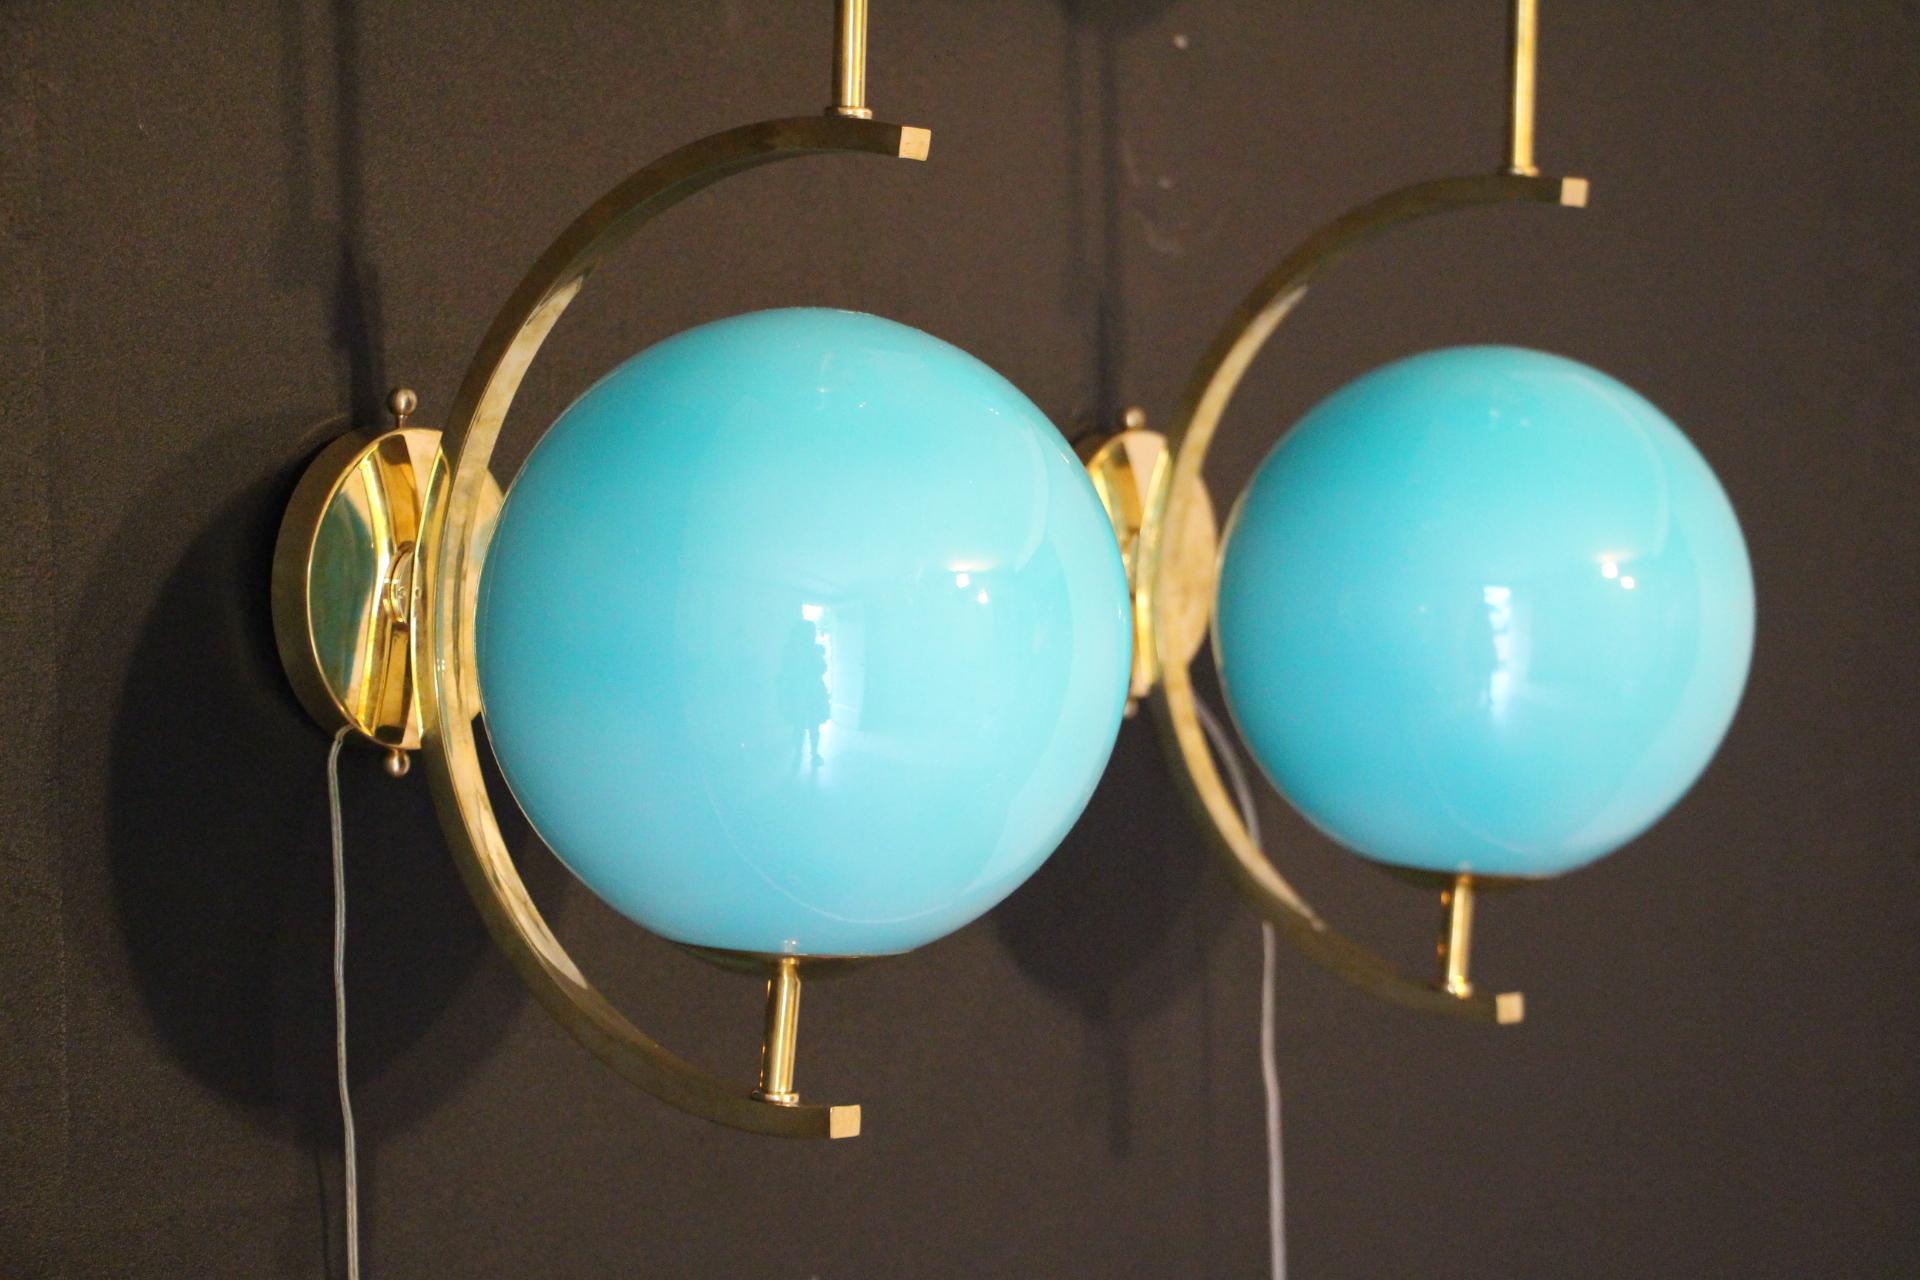 Ces appliques sont très élégantes avec leur cadre en laiton et leurs magnifiques globes en verre Murano bleu turquoise. Ils ont des proportions géométriques très inhabituelles et sont très élégants.
Prenez des ampoules E14. Câblé pour les